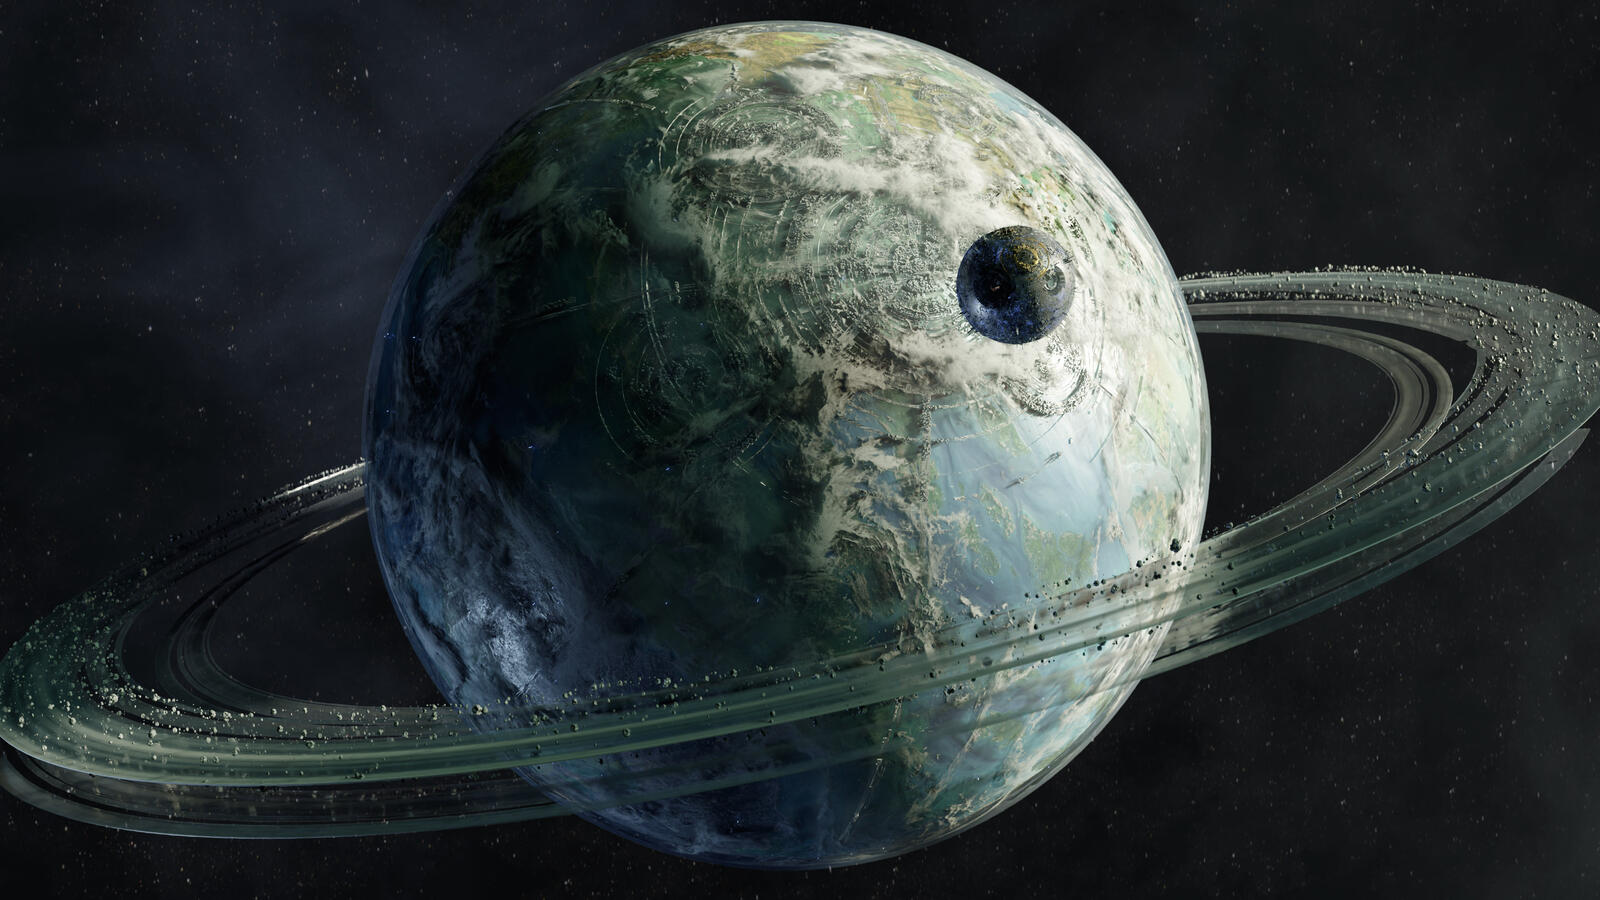 Бесплатное фото Спутник пролетающий мимо планеты с кольцами